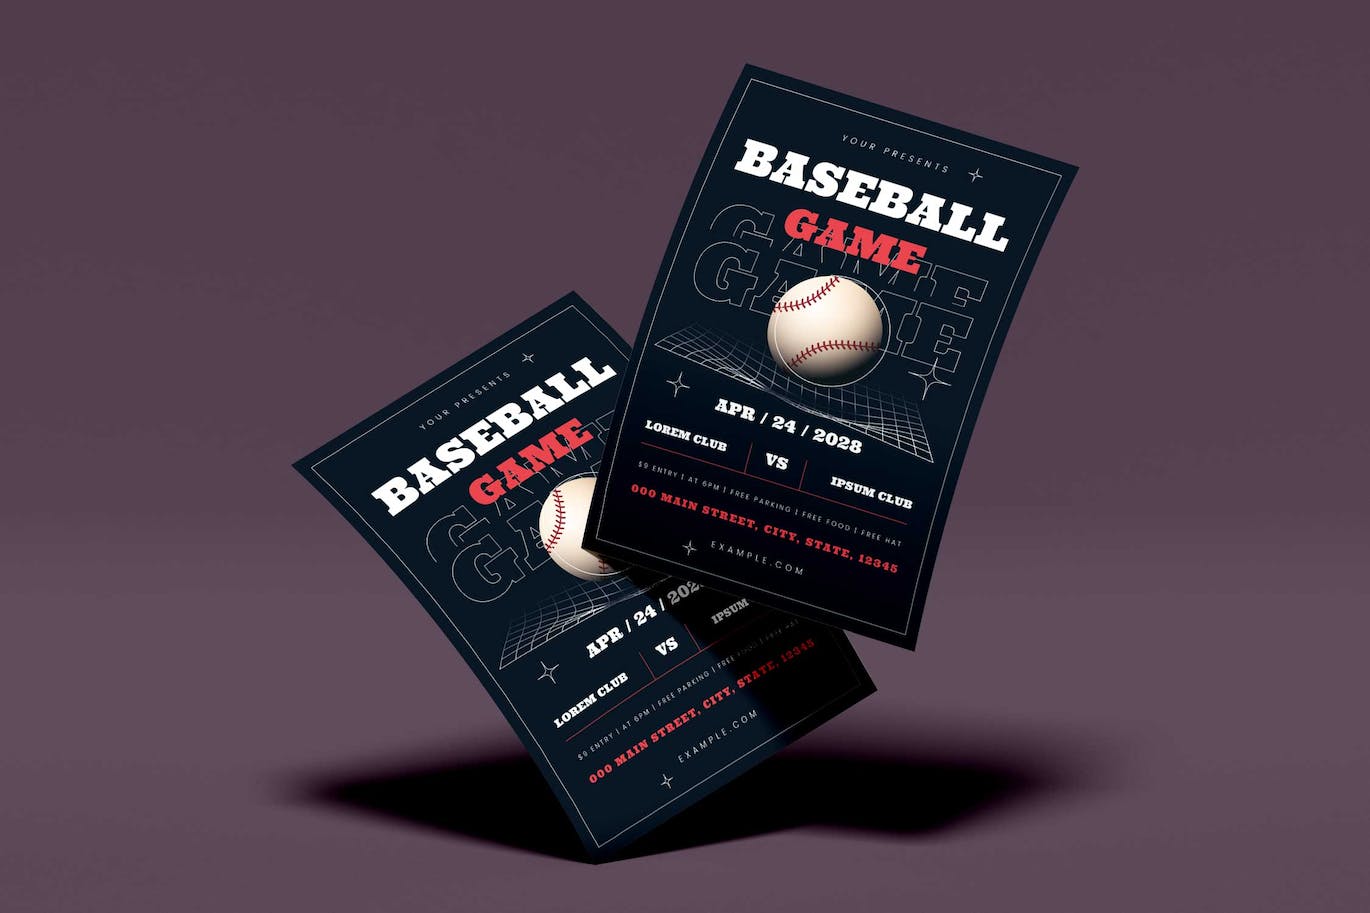 棒球比赛活动海报素材 Baseball Game Flyer Set 设计素材 第3张